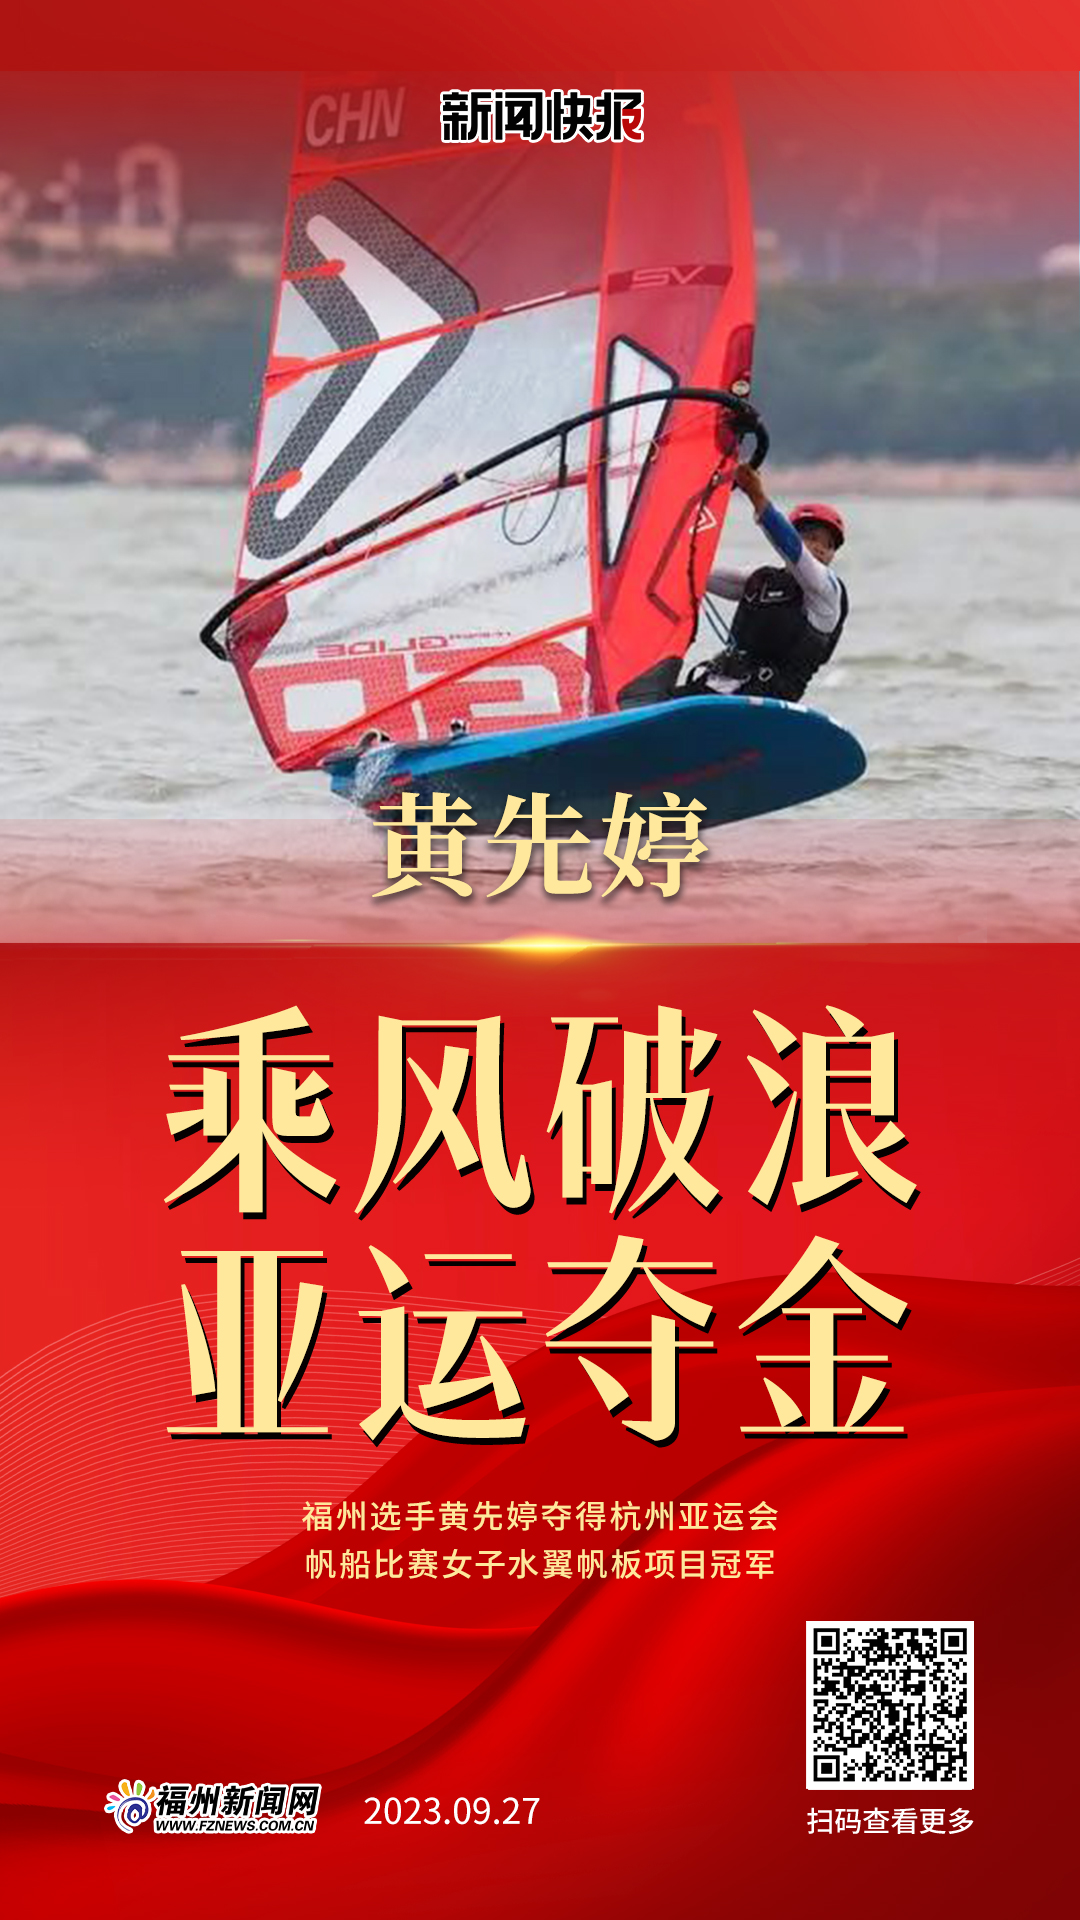 福州选手黄先婷夺得杭州亚运会帆船比赛女子水翼帆板项目冠军